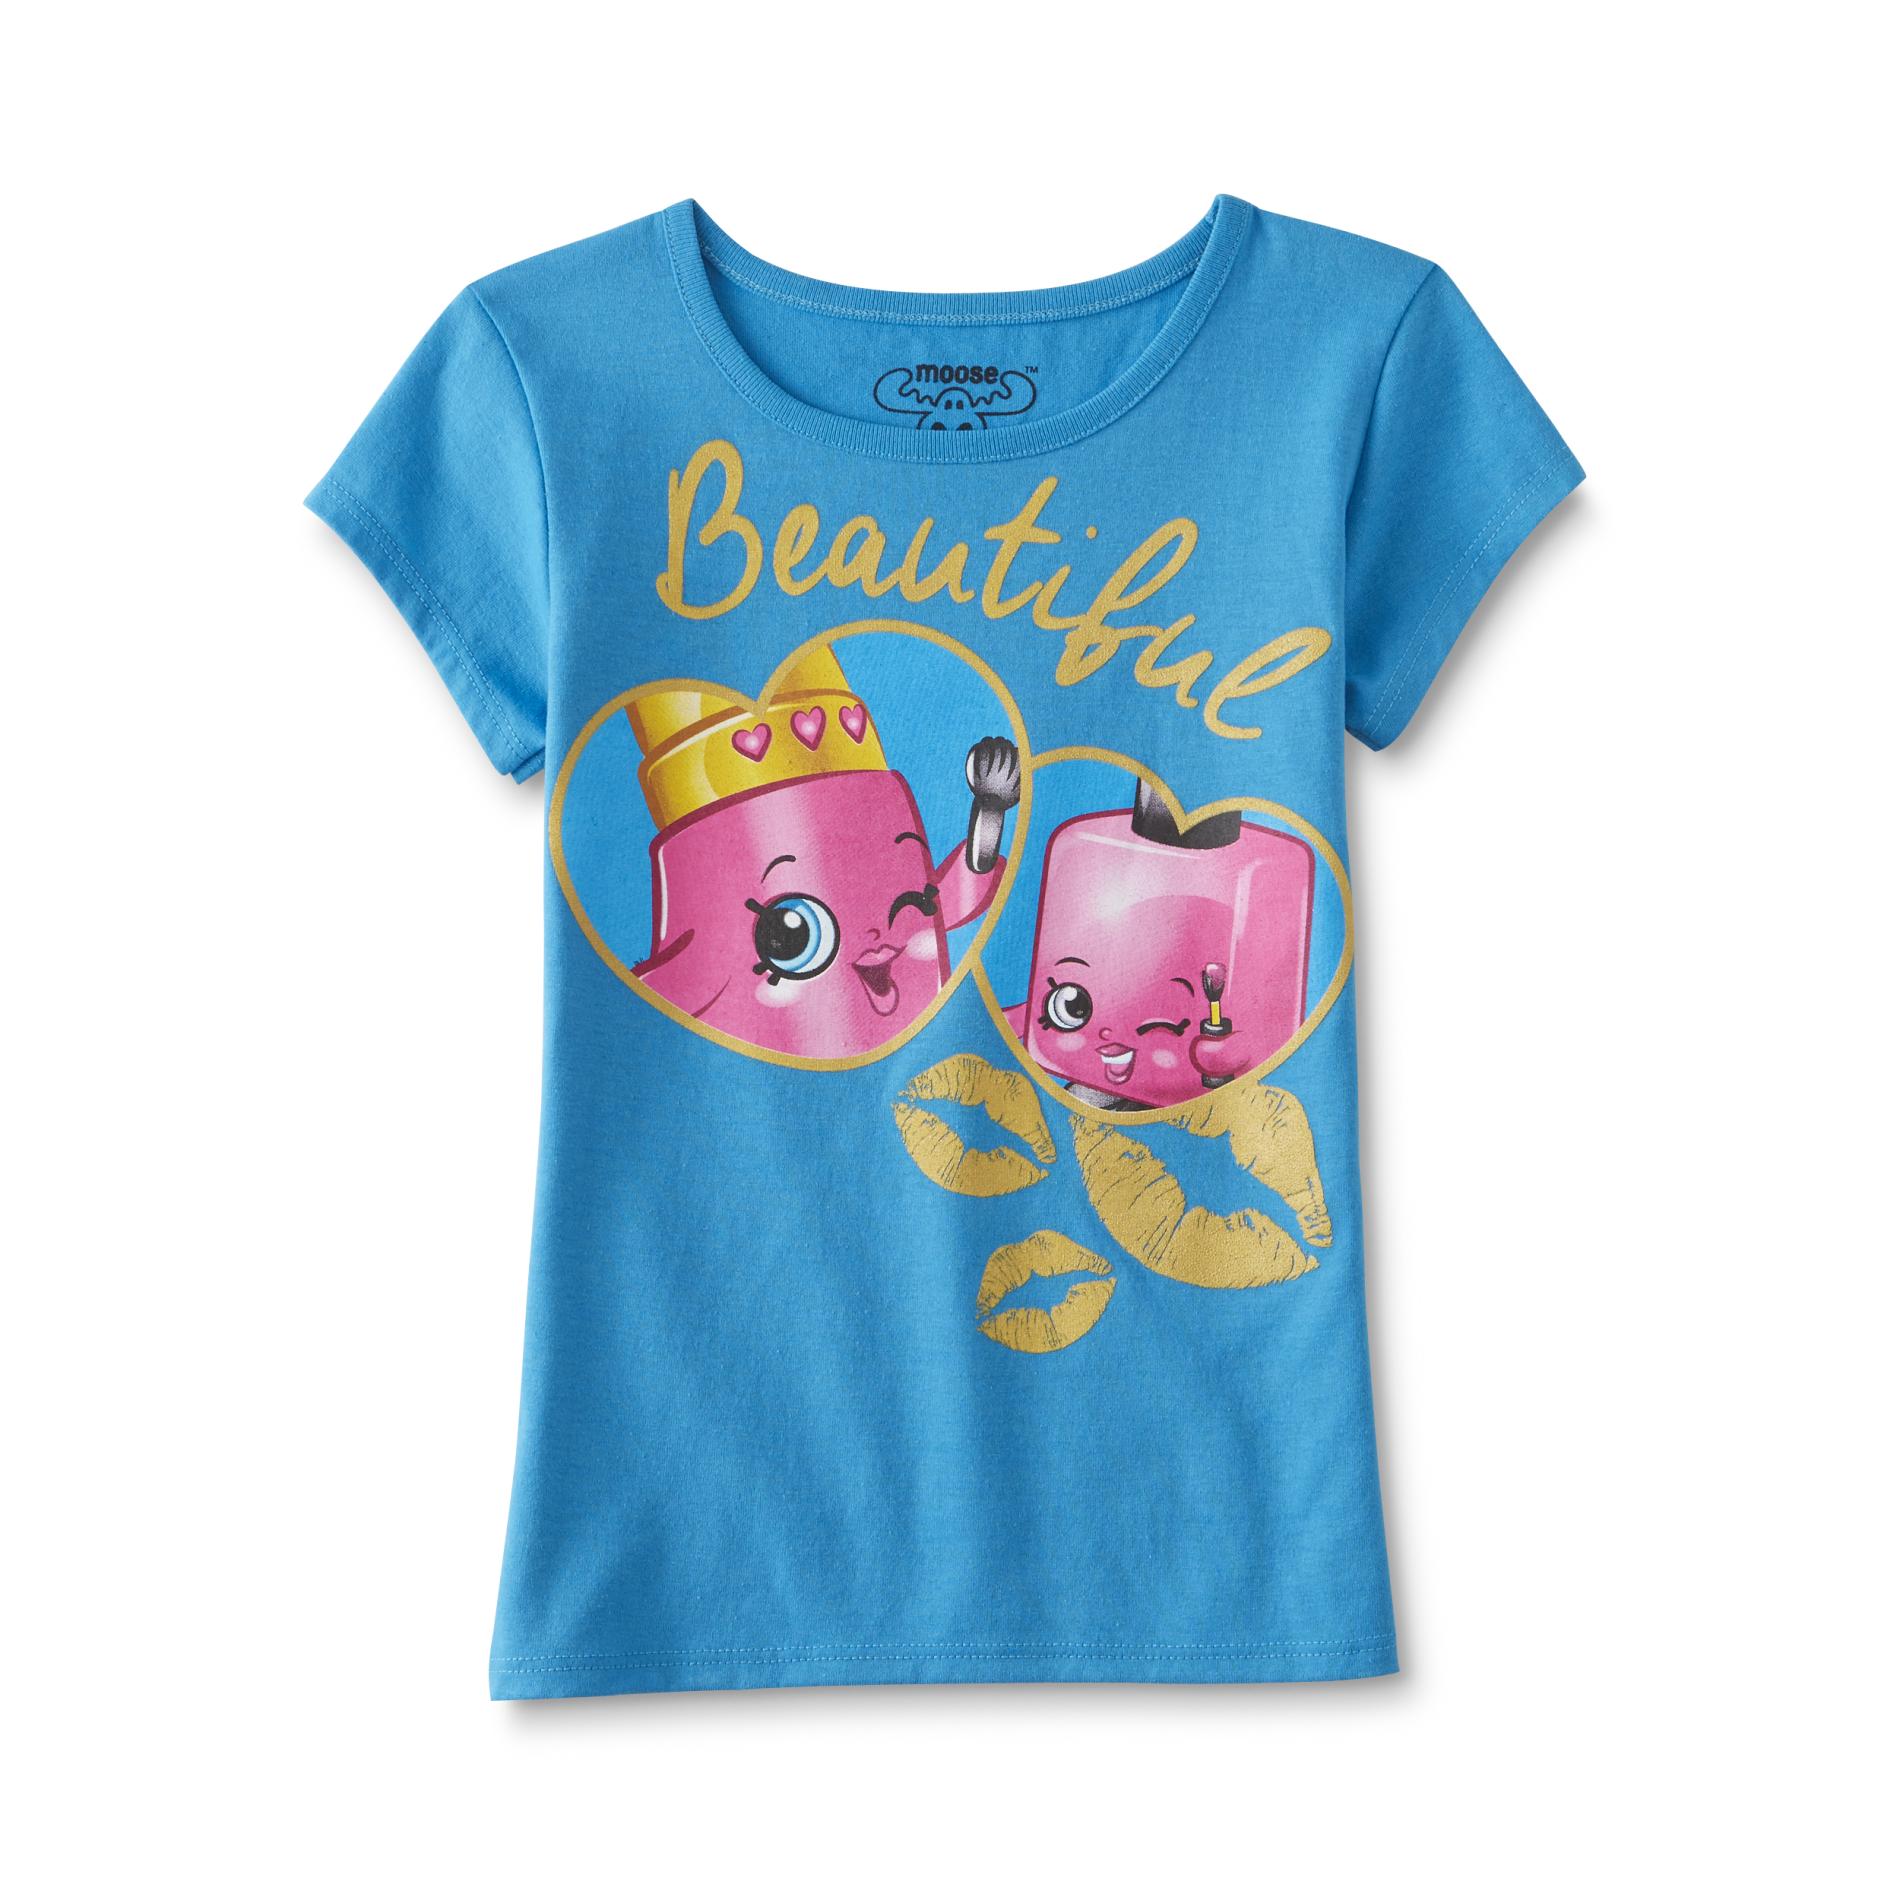 Shopkins Girl's Graphic T-Shirt - Beautiful